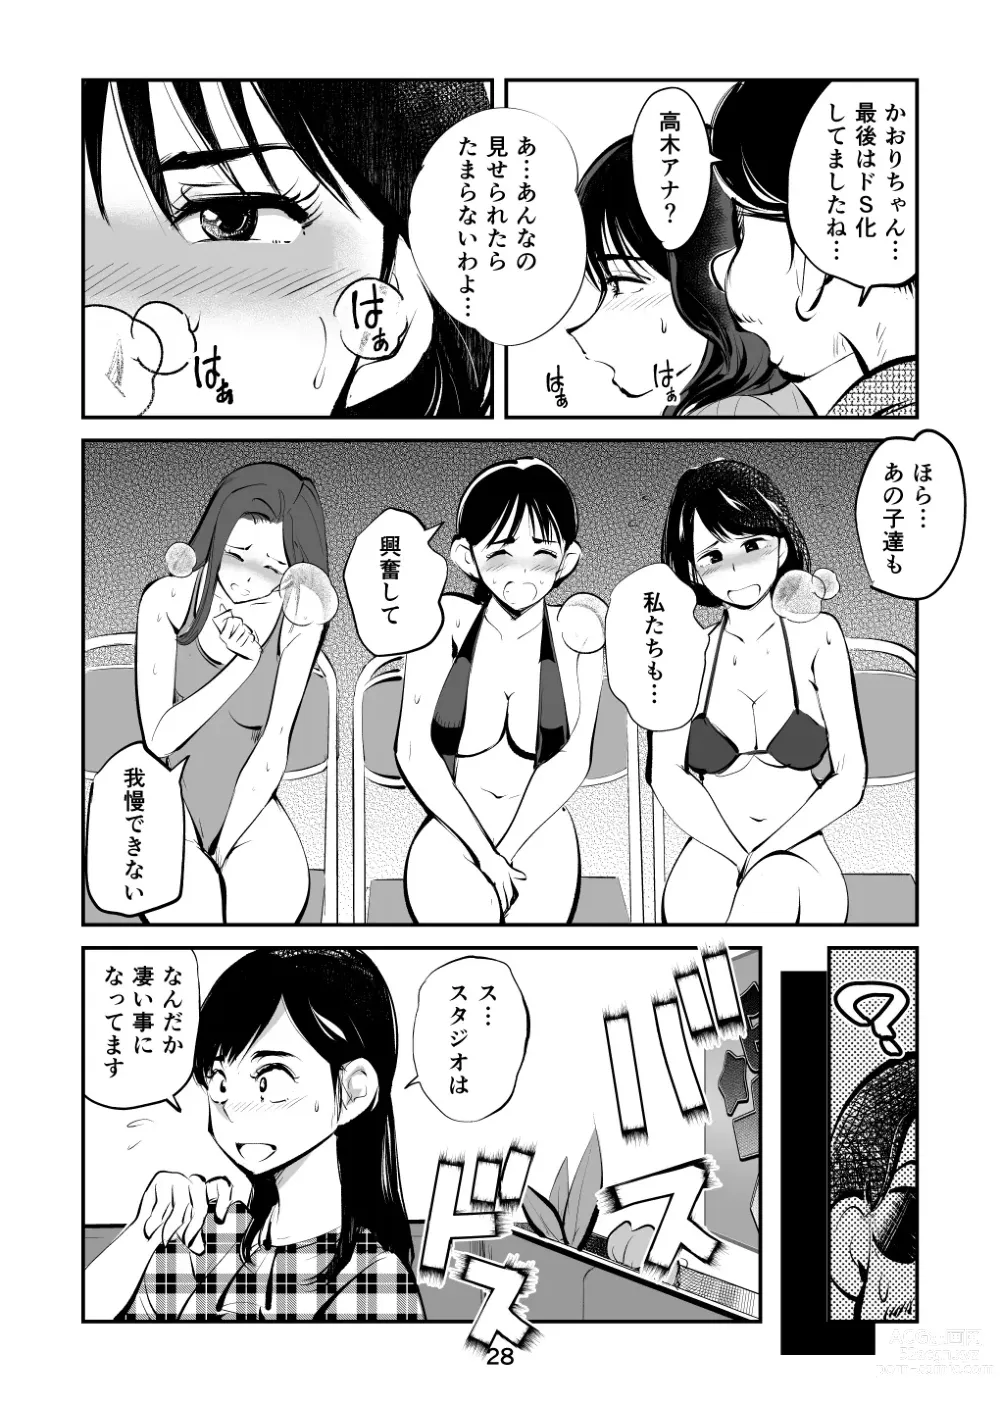 Page 28 of doujinshi Kintama o tsubushita joshi-ana